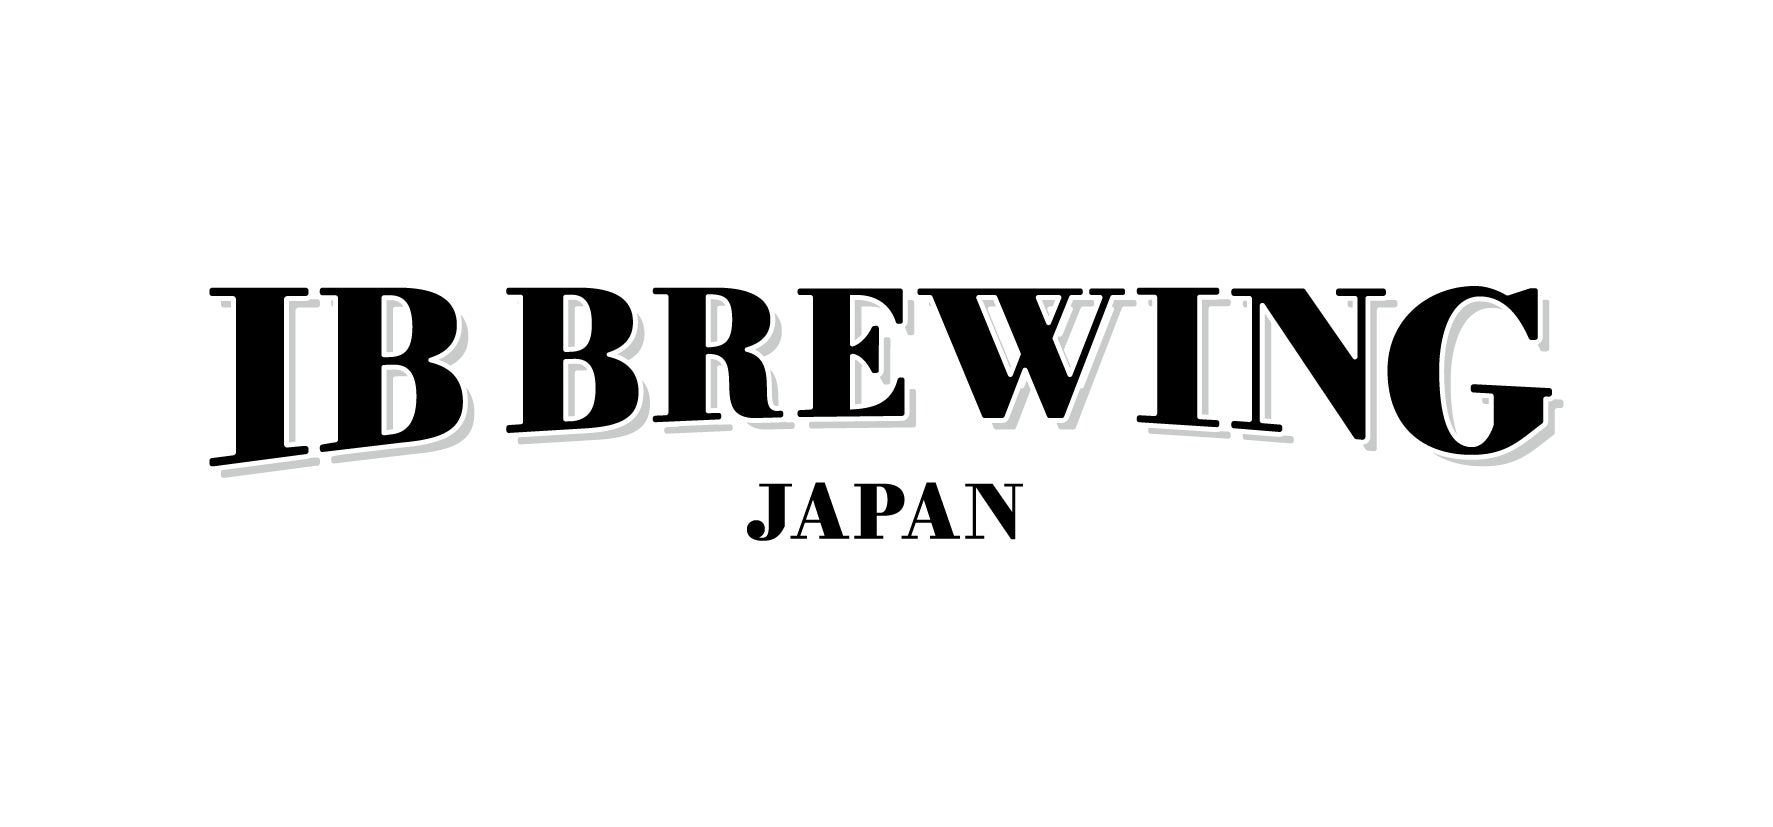 クラフトビールメーカー「IB BREWING JAPAN」とテラスハウス軽井沢編出演のプロスノーボーダー「中村貴之」スポンサー契約を締結。~共同開発 BREW浪漫 先行予約開始~